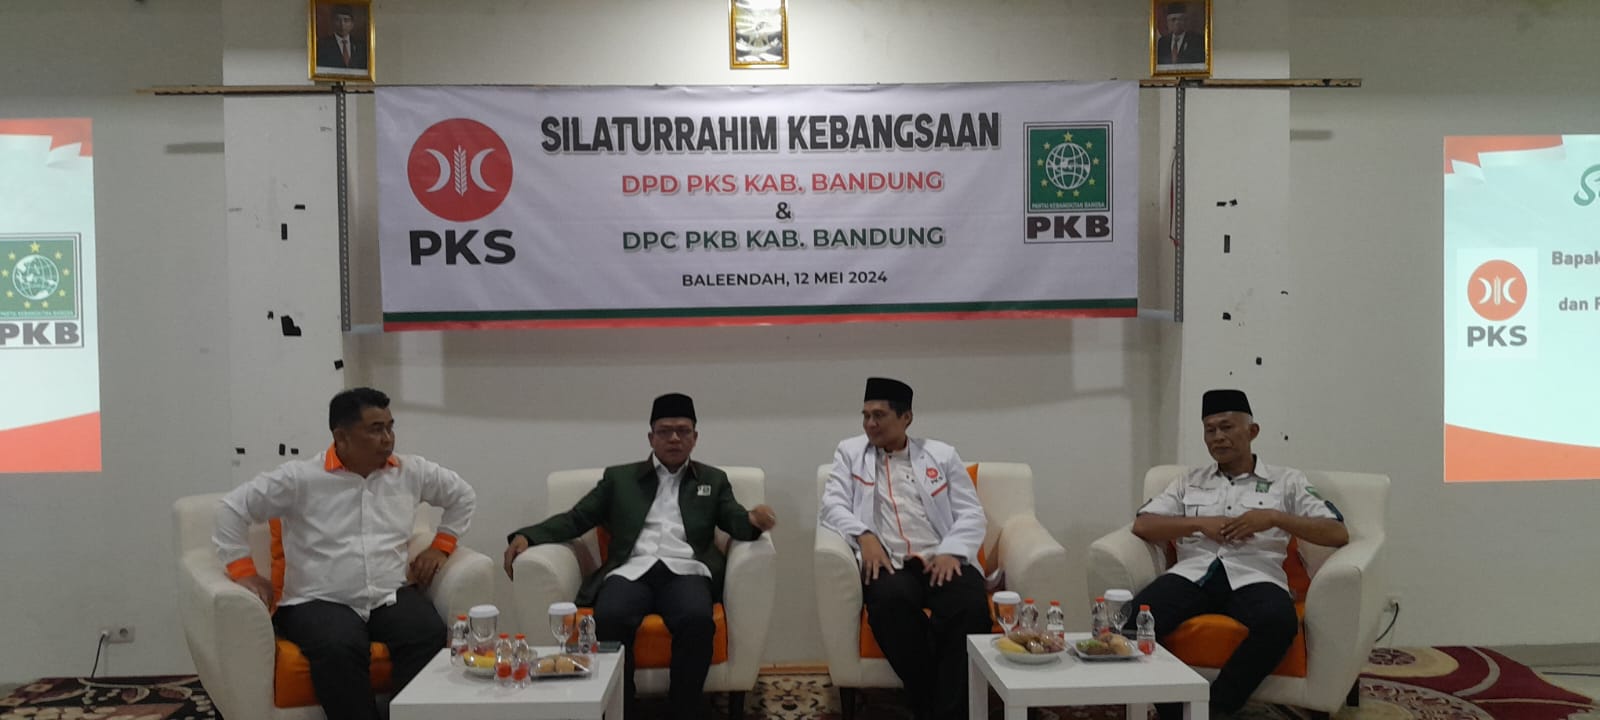 Apresiasi Kunjungan PKB ke Kantor DPTD PKS Kabupaten Bandung, Ini Harapan Kang Gun Gun 